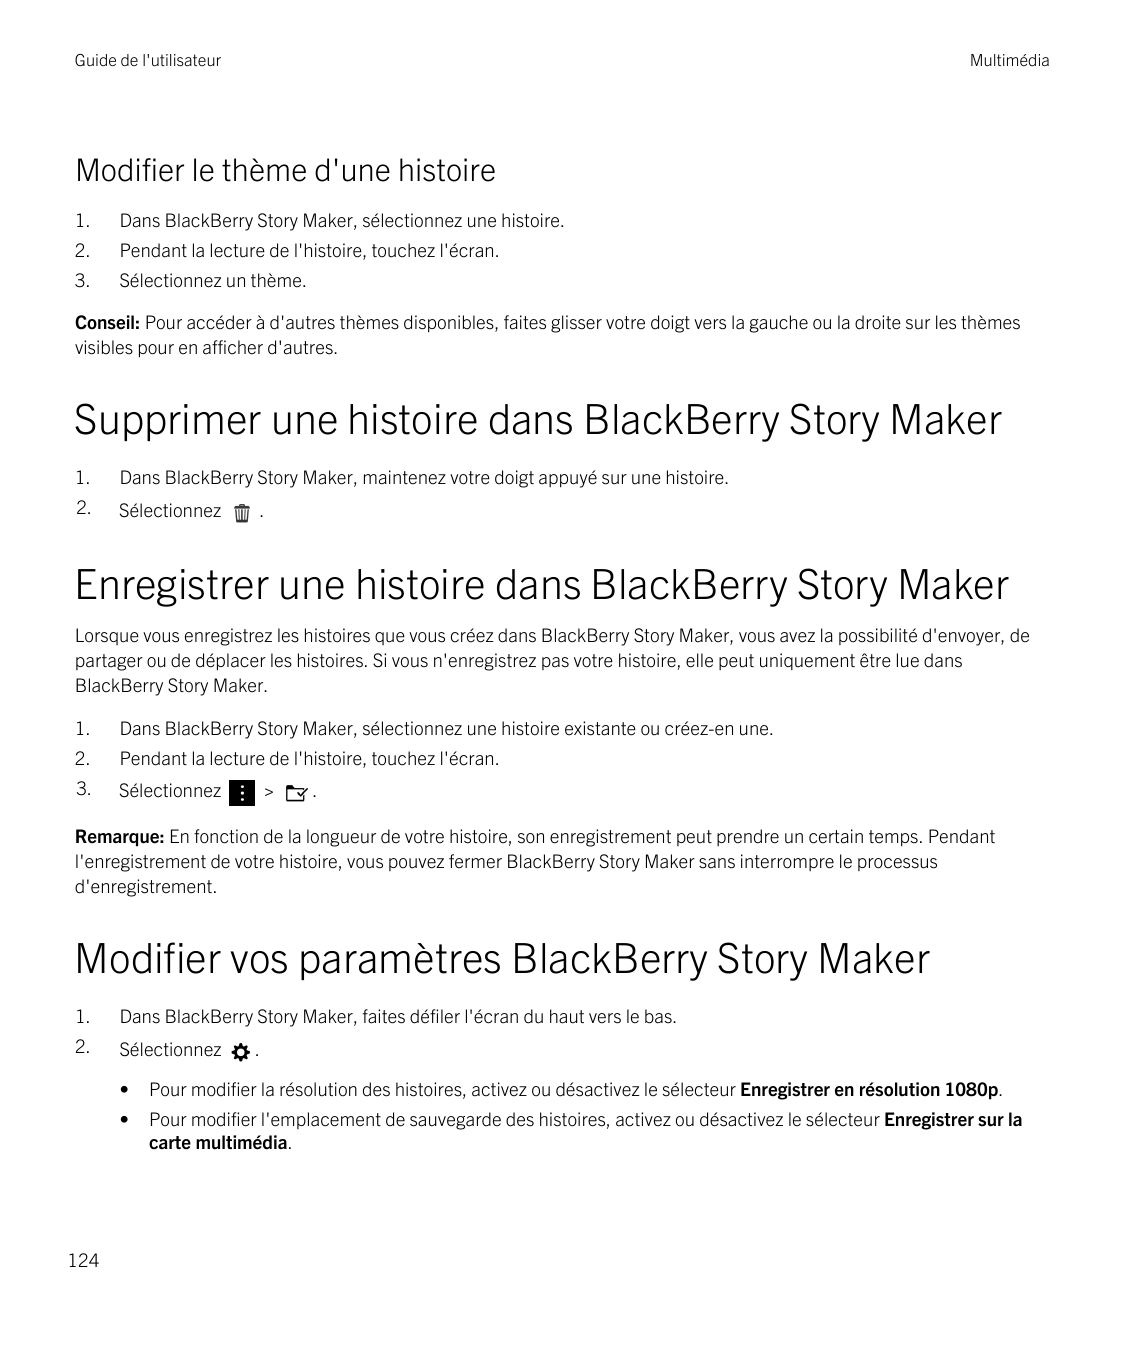 Guide de l'utilisateurMultimédiaModifier le thème d'une histoire1.Dans BlackBerry Story Maker, sélectionnez une histoire.2.Penda